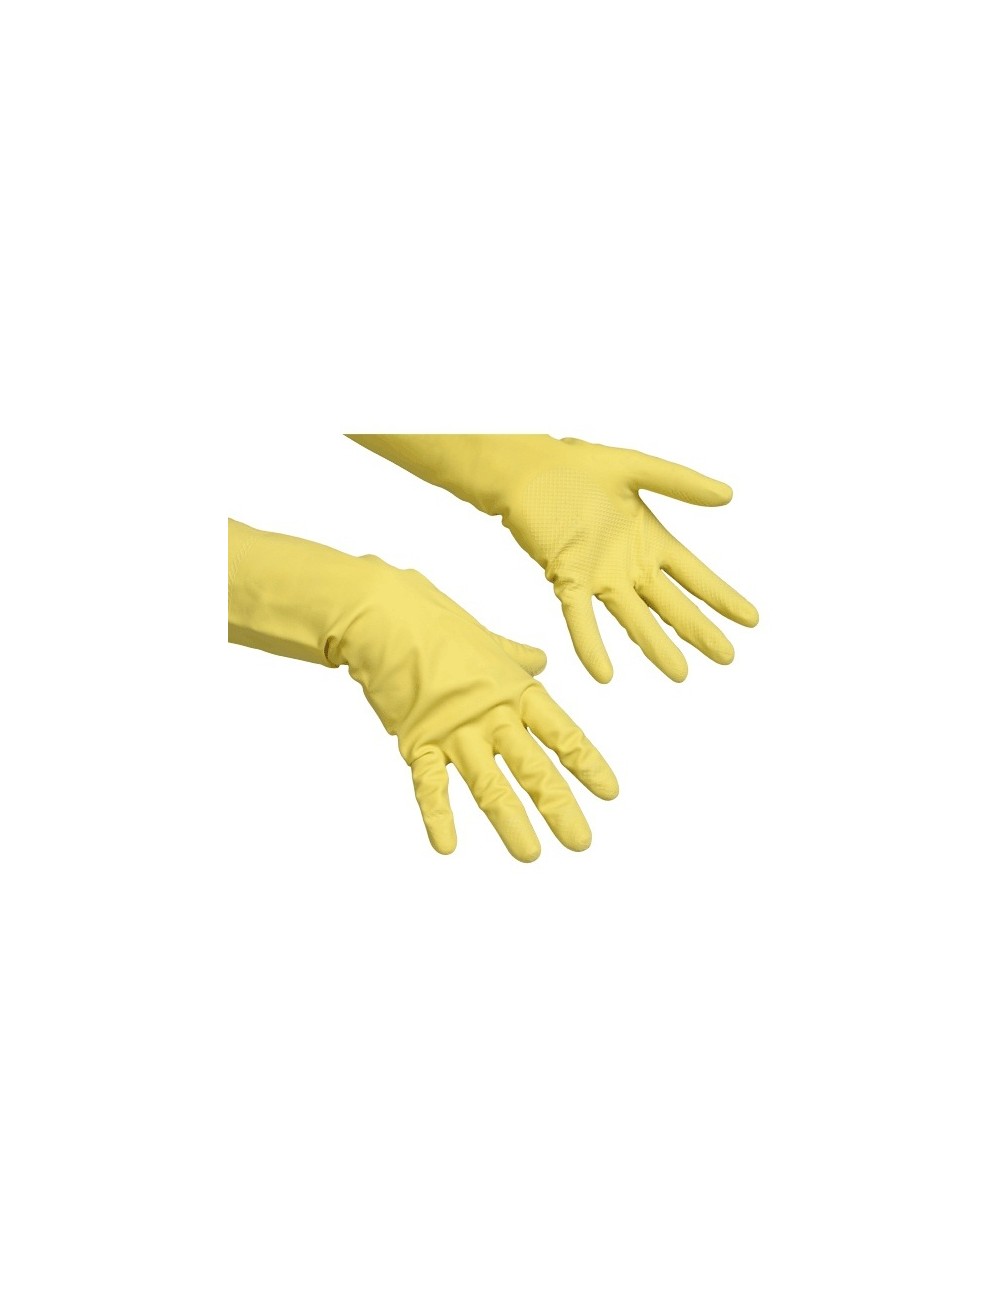 Vileda Contract rękawice gospodarcze (L duże) – z naturalnego lateksu, z wyściółką bawełnianą